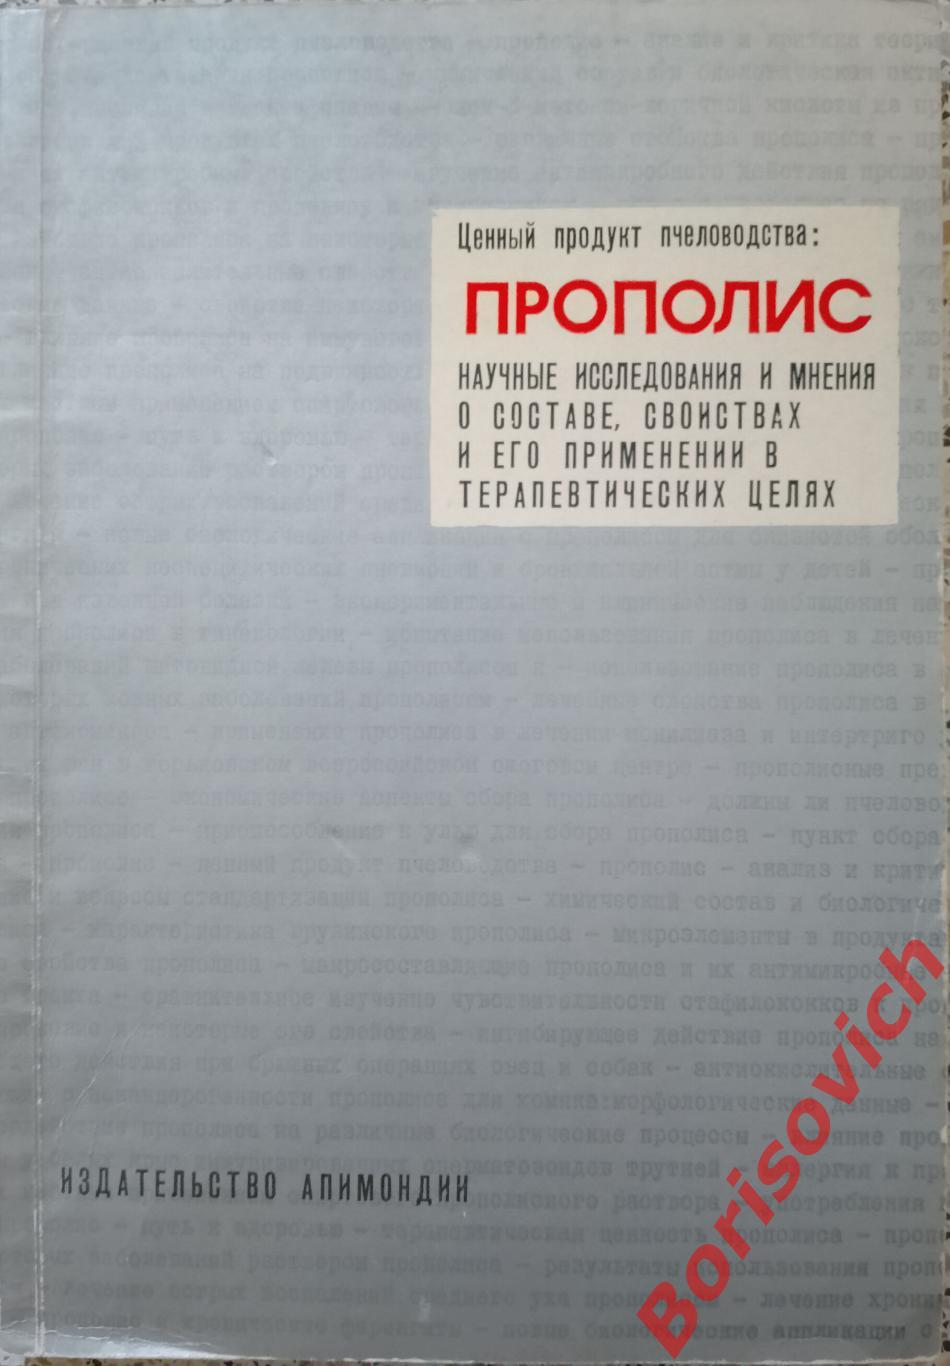 ПРОПОЛИС Состав, свойства и его применение в терапевтических целях Бухарест 1975